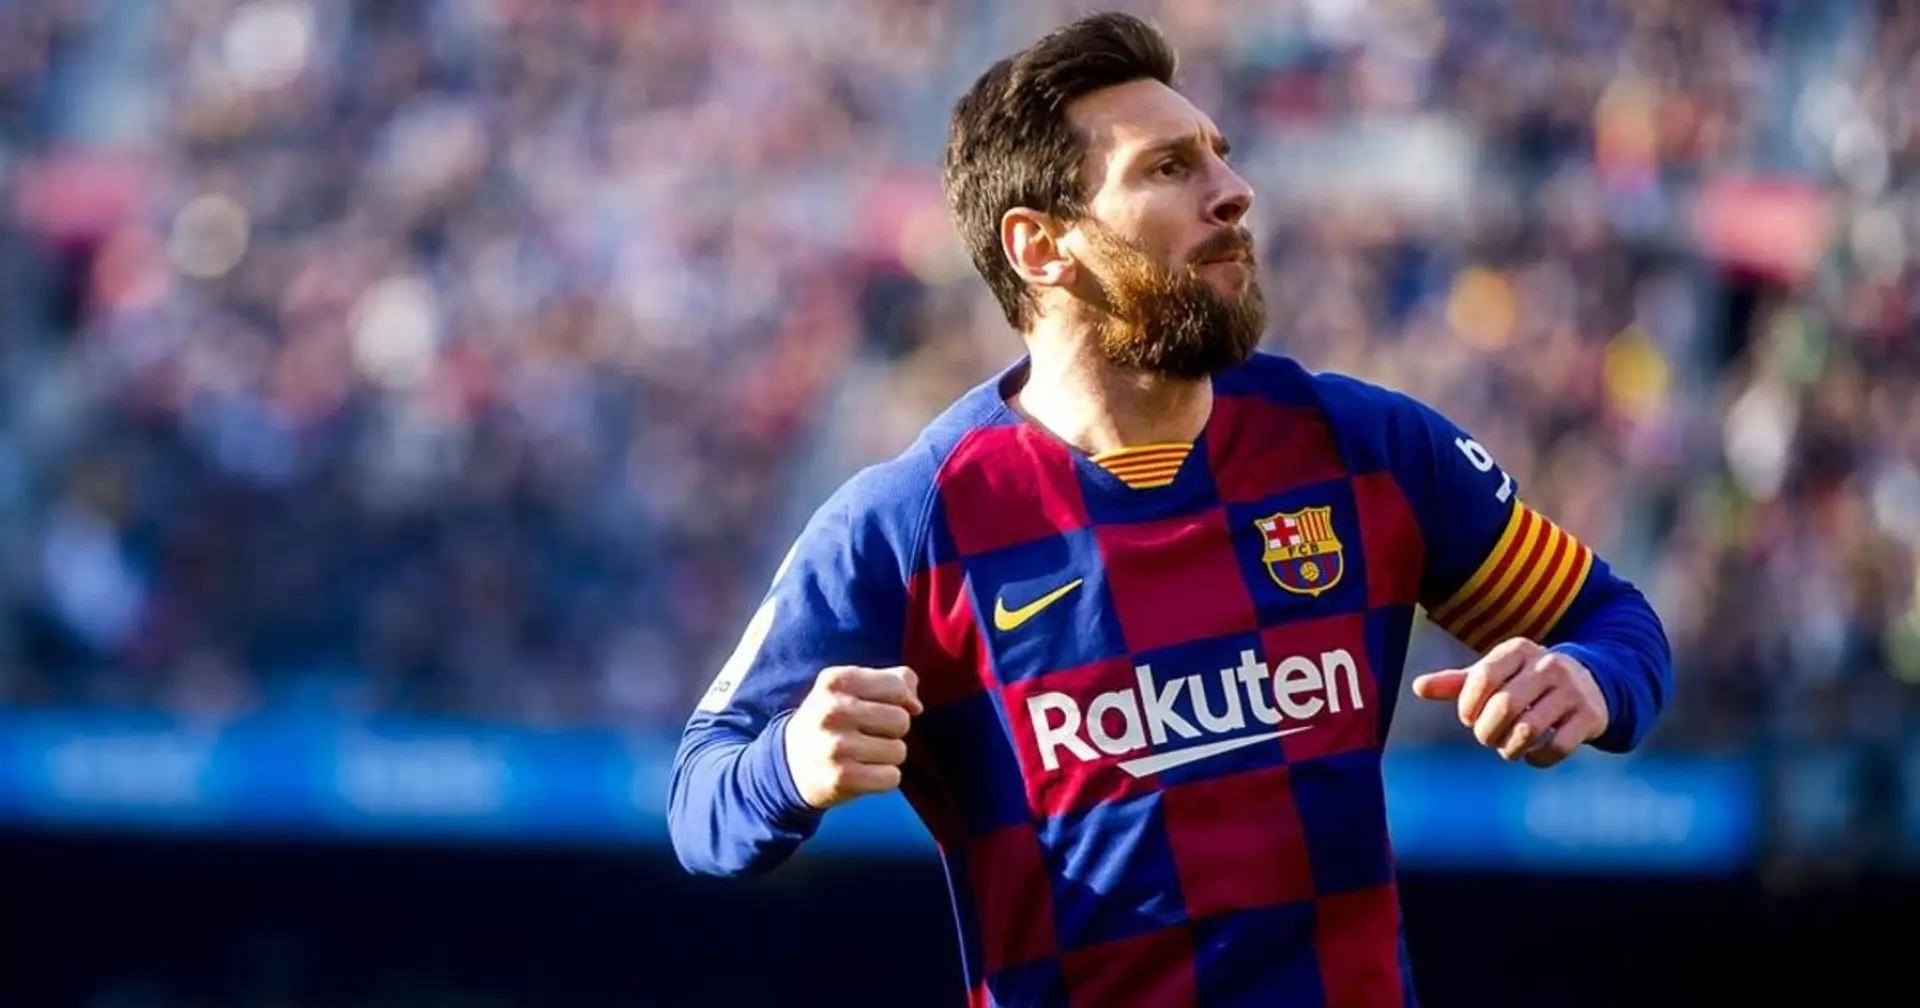 Siempre en la cima: Messi lidera la lista de jugadores con más asistencias de las 5 grandes ligas europeas